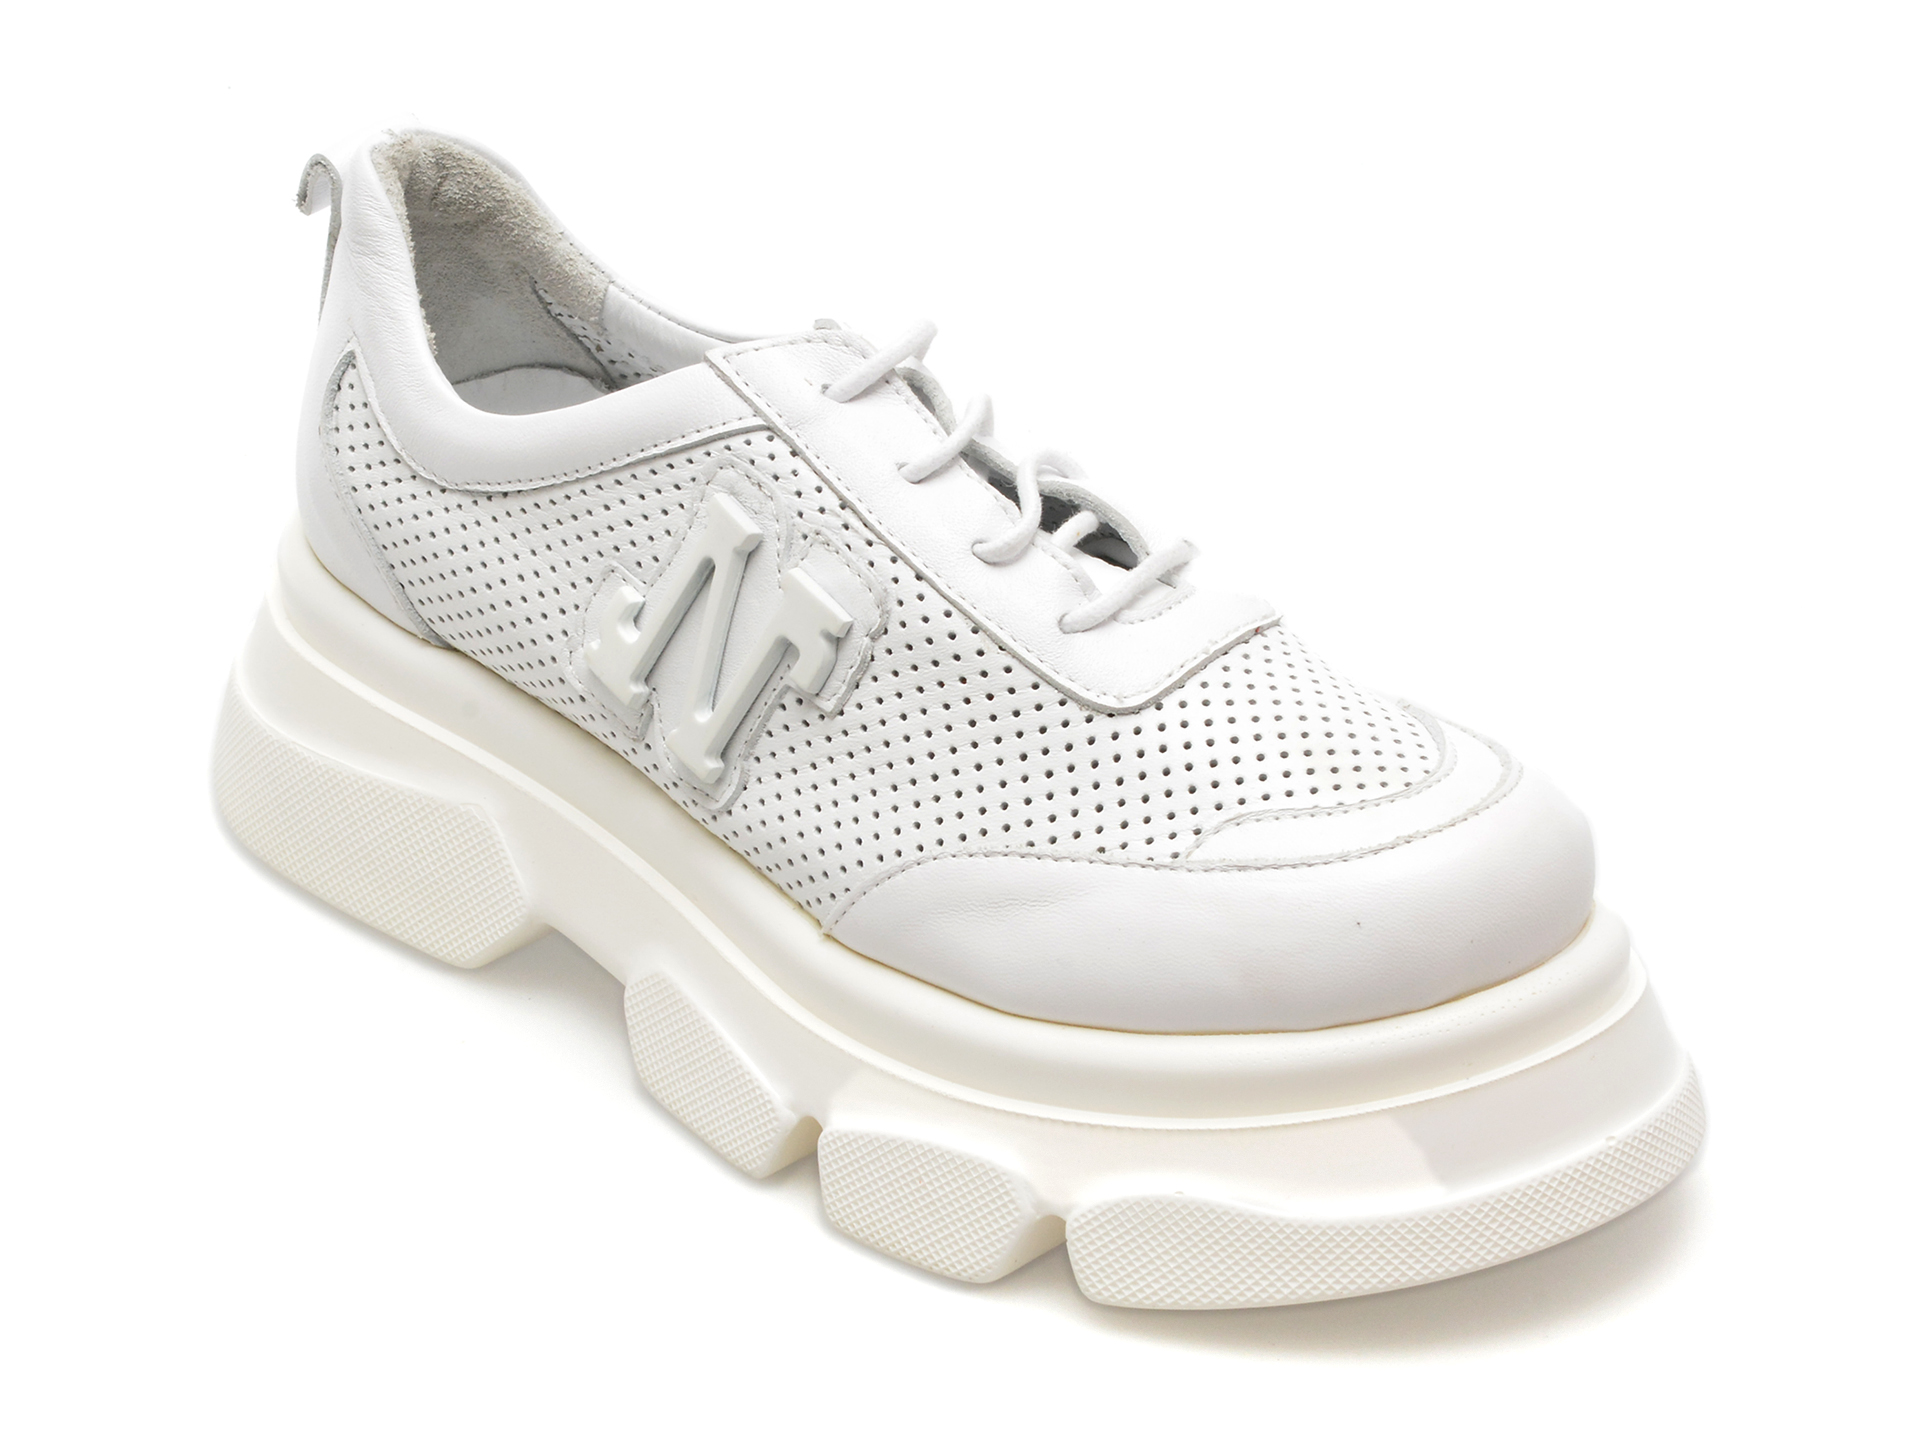 Pantofi LIZZARO albi, 2805, din piele naturala